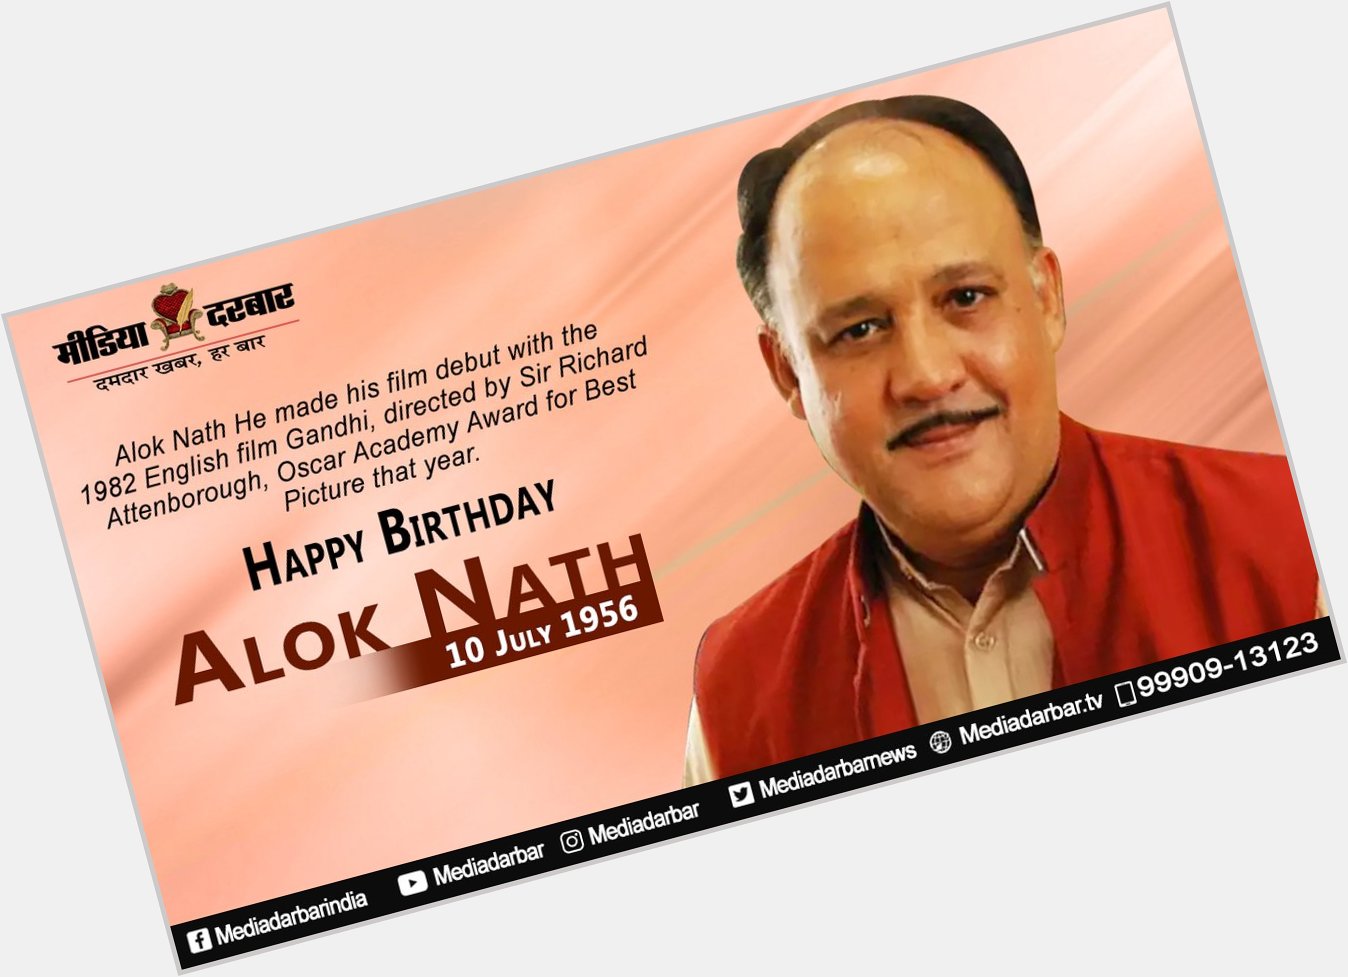 Wishing Very Happy Birthday to actor Alok Nath ji.  